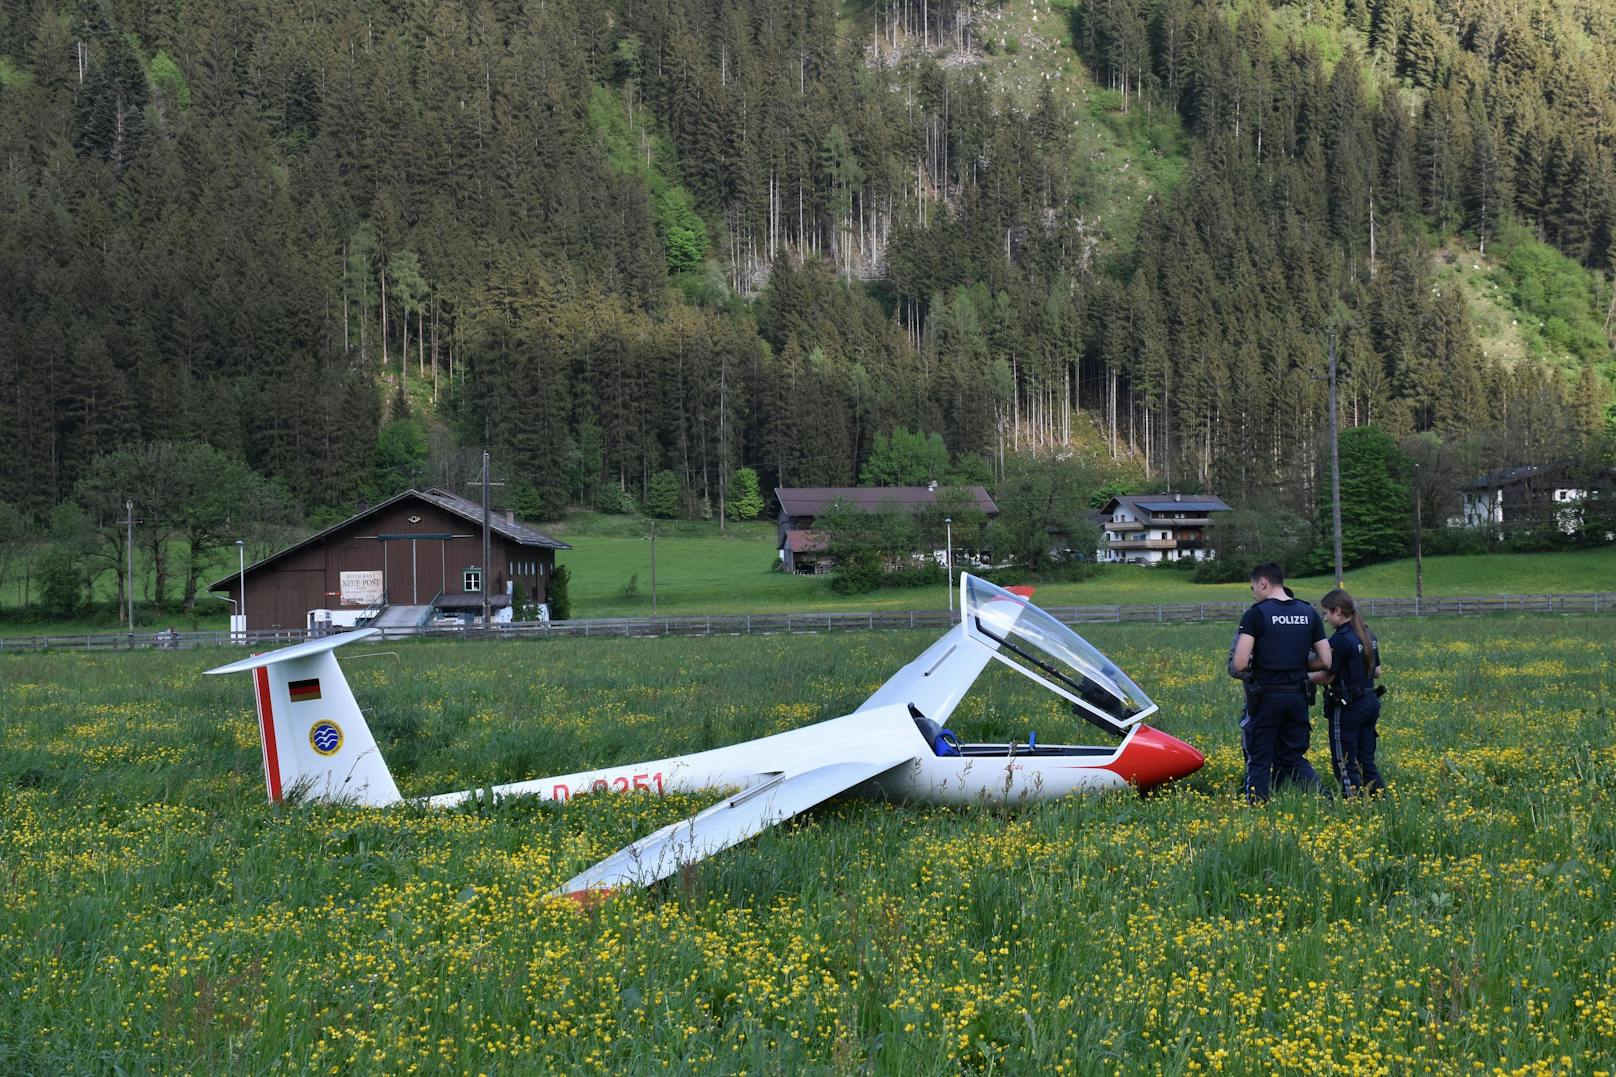 Am Dienstag startete ein 17-jähriger Pilot aus Deutschland mit einem Segelflugzeug in Königsdorf (Landkreis Bad Tölz) und flog in Richtung Tirol. 